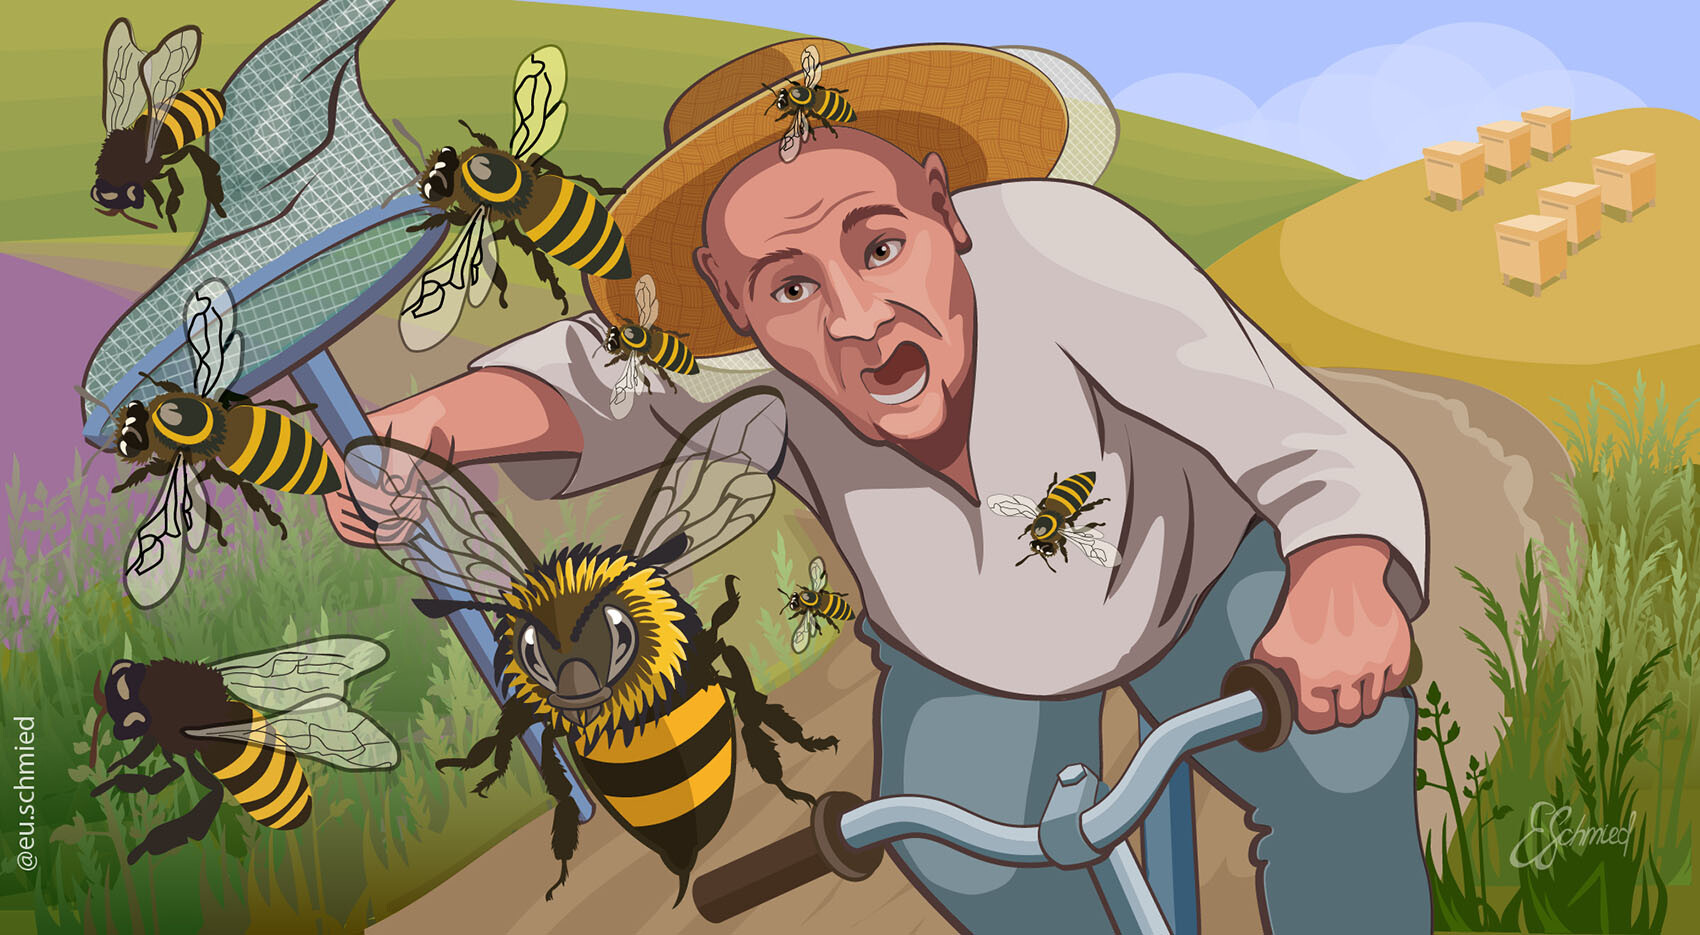 Скачай игру спасай пчел